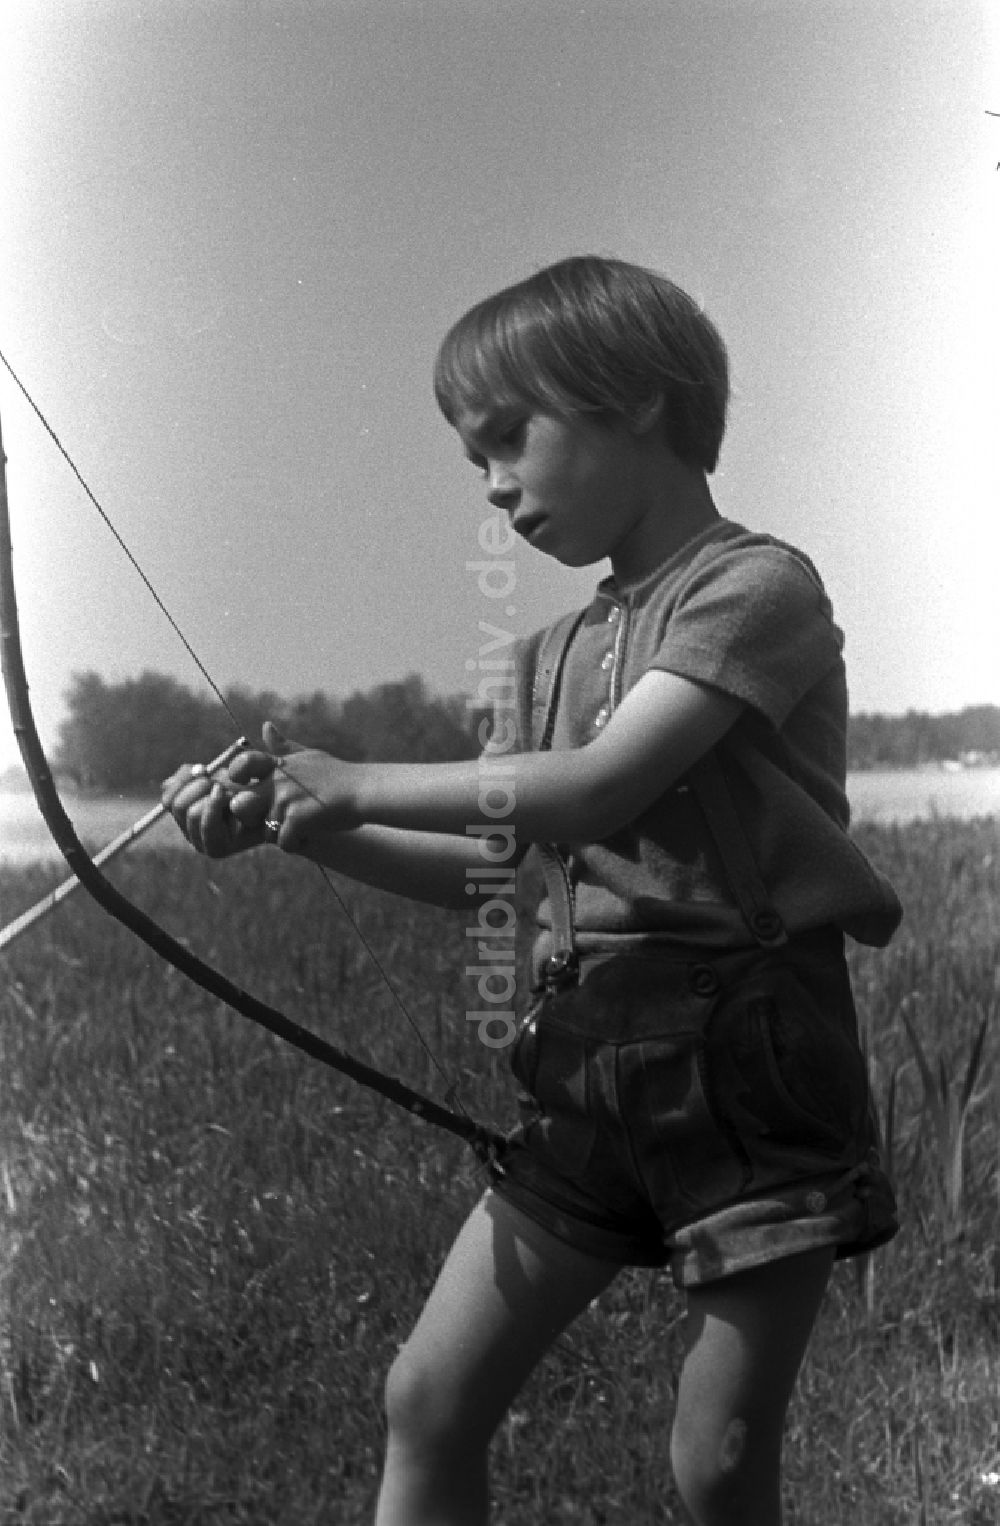 DDR-Fotoarchiv: Kirchmöser - Kleines Kind in Lederhosen mit Pfeil und Bogen auf einer Wiese in Brandenburg